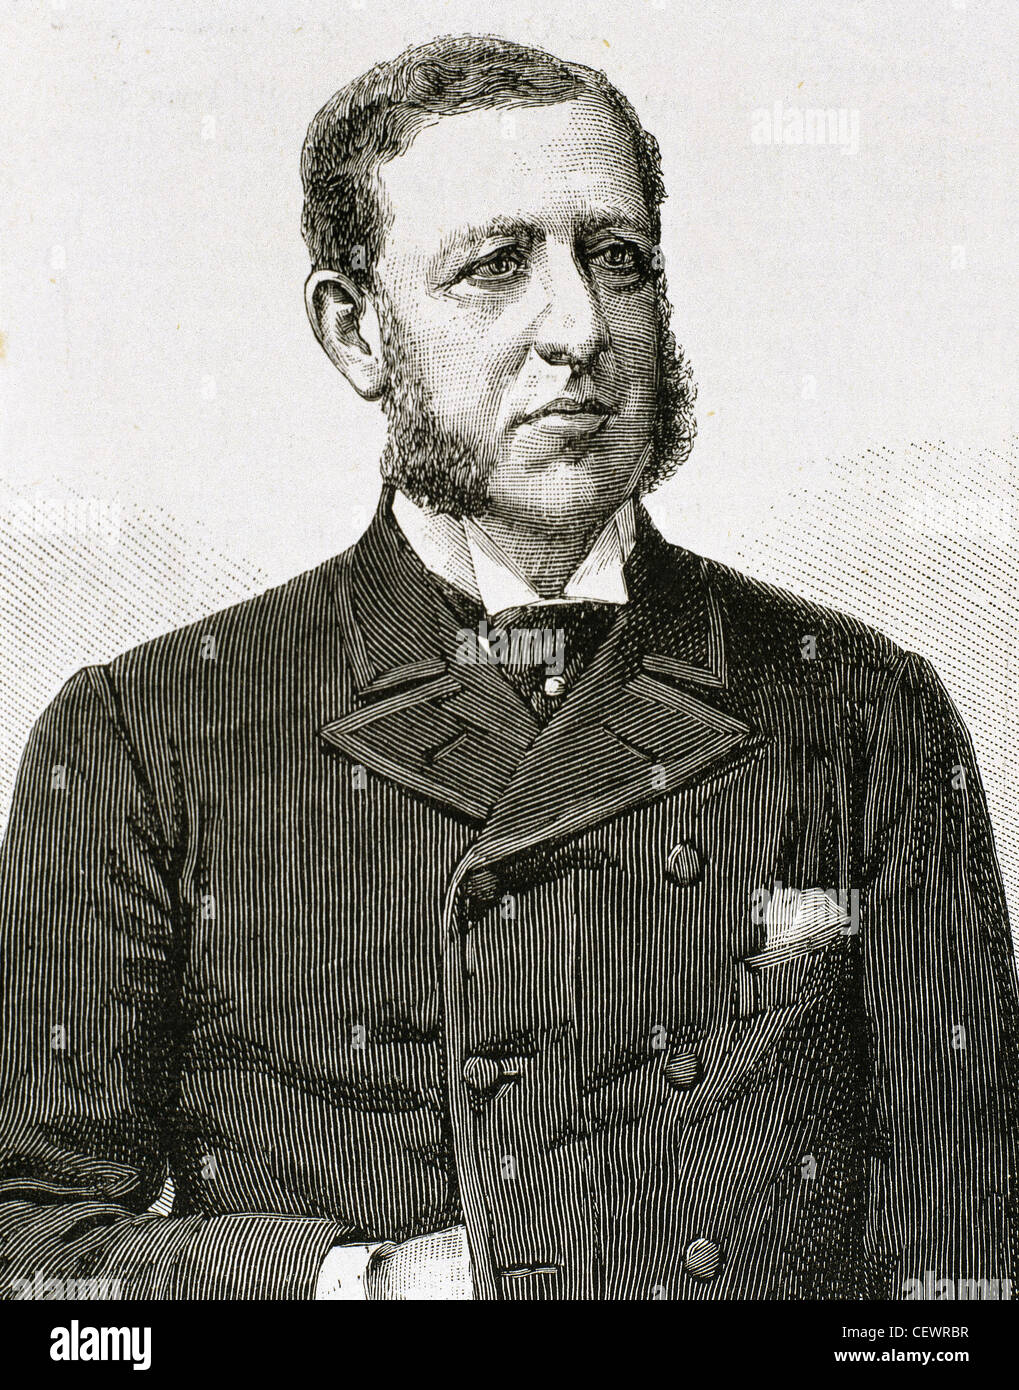 Cristobal Colon De La Cerda (1837-1910). Spanischer Politiker. Porträt. Gravur. Stockfoto